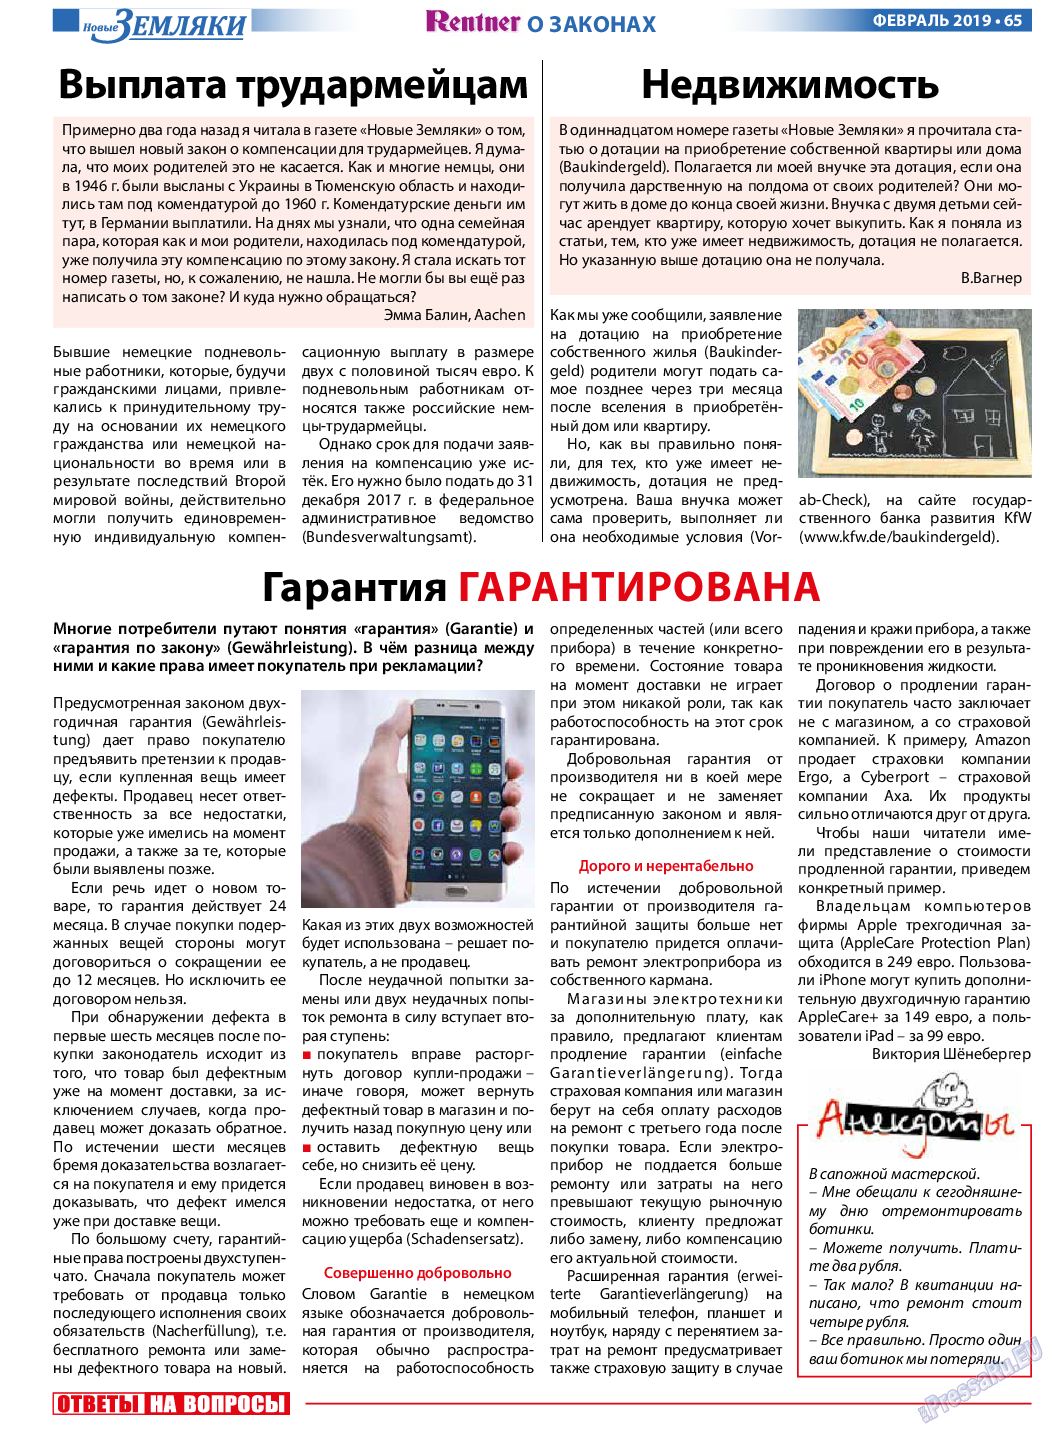 Новые Земляки, газета. 2019 №2 стр.65